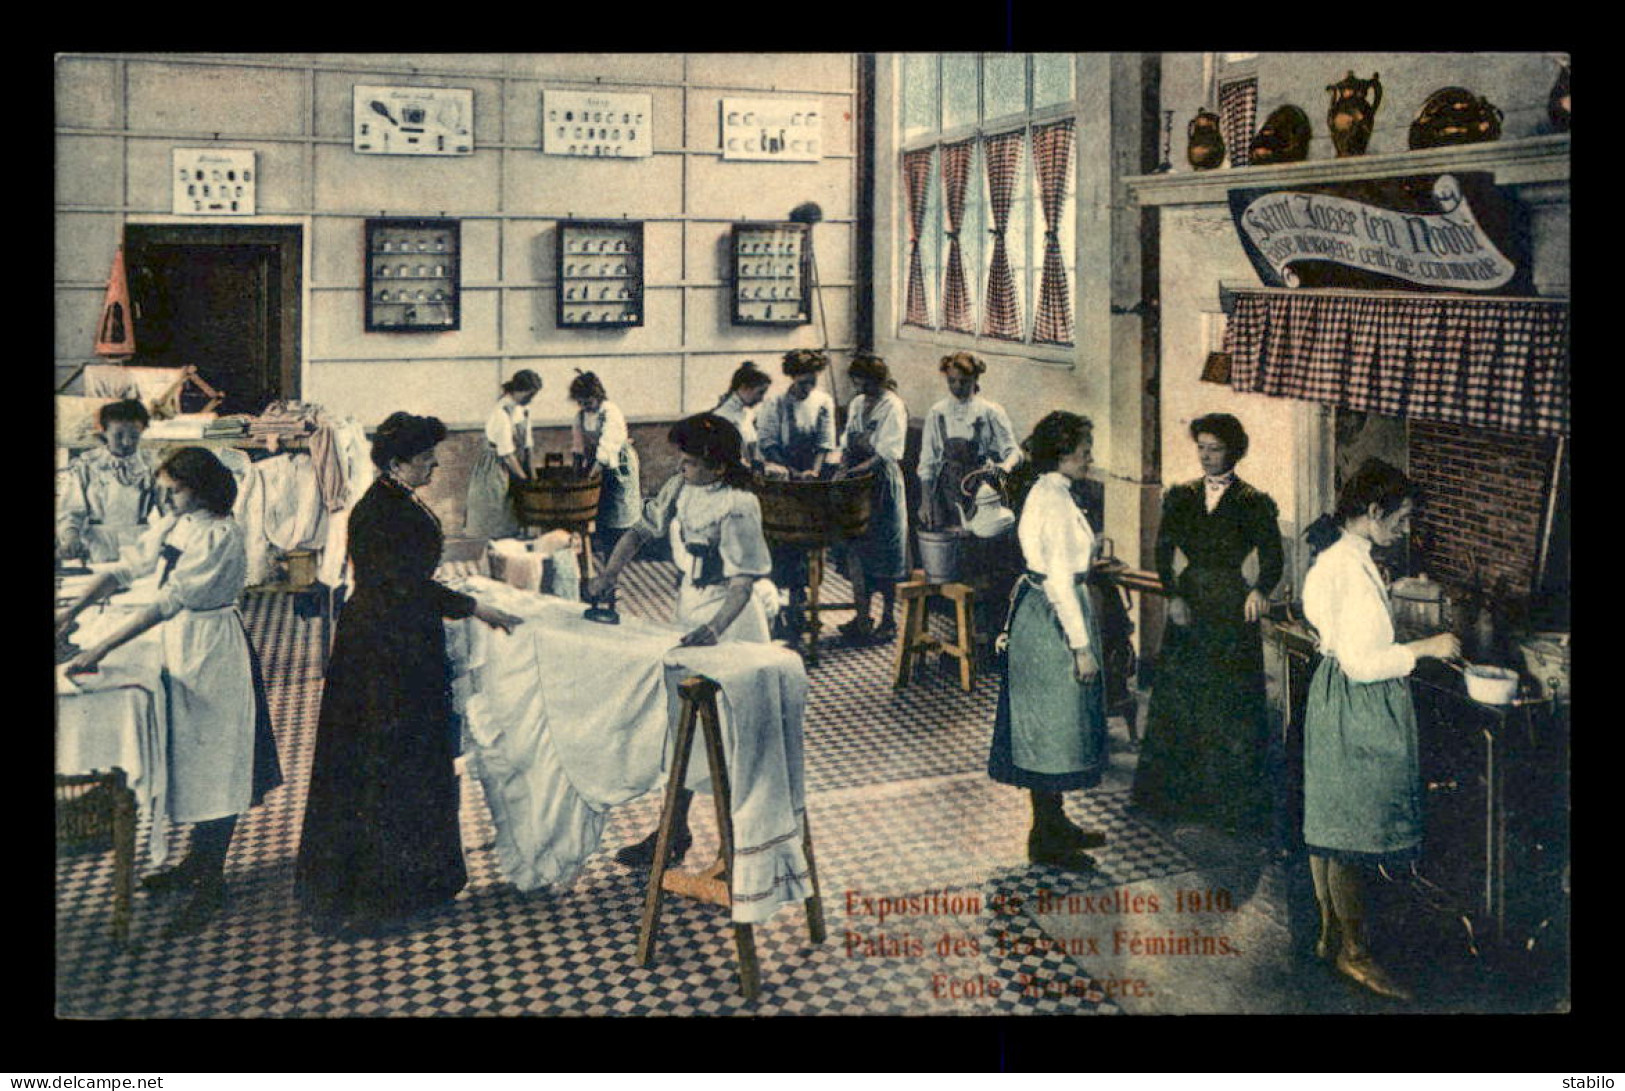 BELGIQUE - BRUXELLES - EXPOSITION 1910 - PALAIS DES TRAVAUX FEMININS - REPASSAGE - FER A REPASSER - Enseignement, Ecoles Et Universités